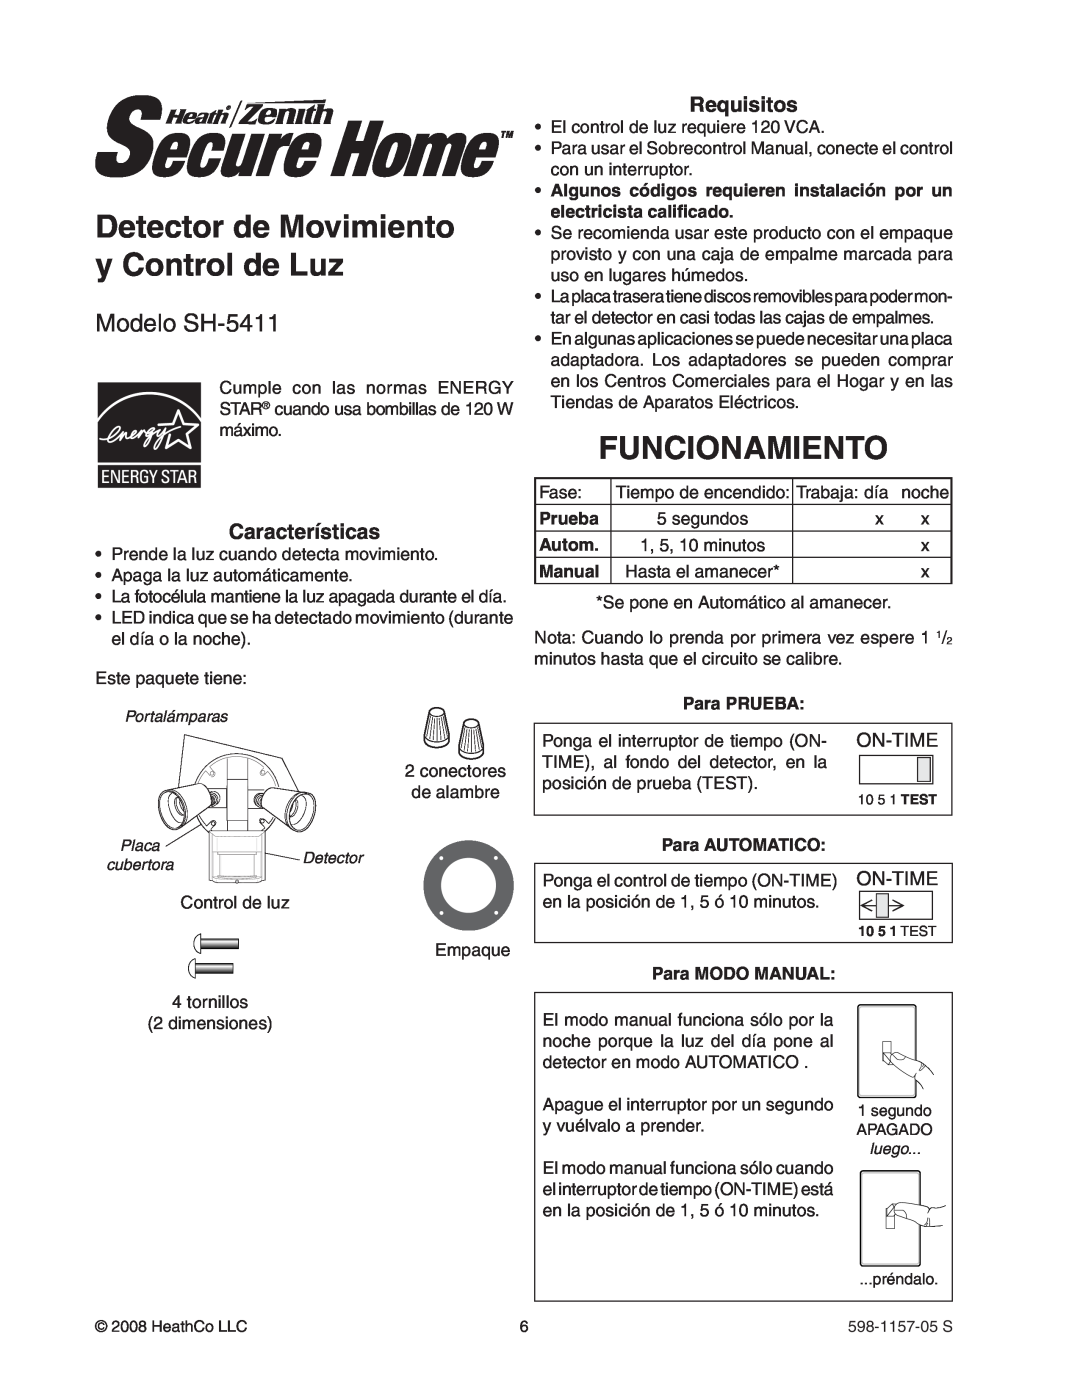 Heath Zenith Detector de Movimiento y Control de Luz, Funcionamiento, Modelo SH-5411, On-Time, Prueba, Autom, Manual 